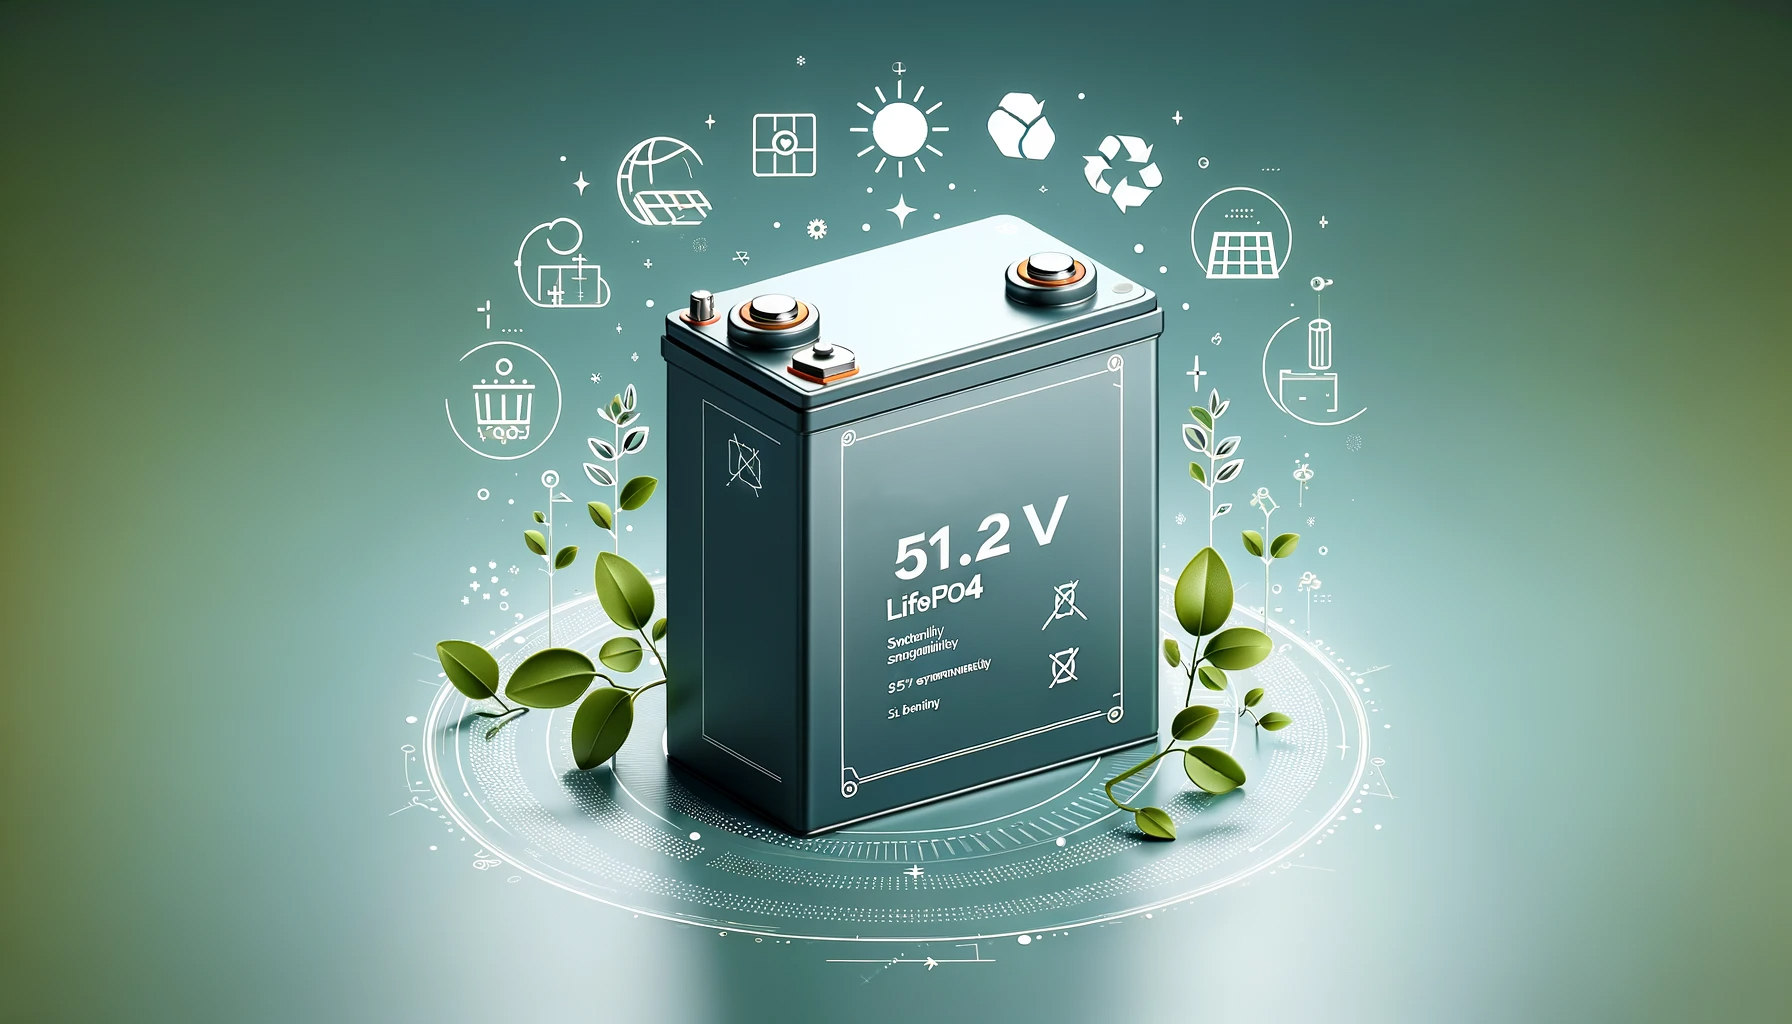 51.2V LiFePO4 Batteries